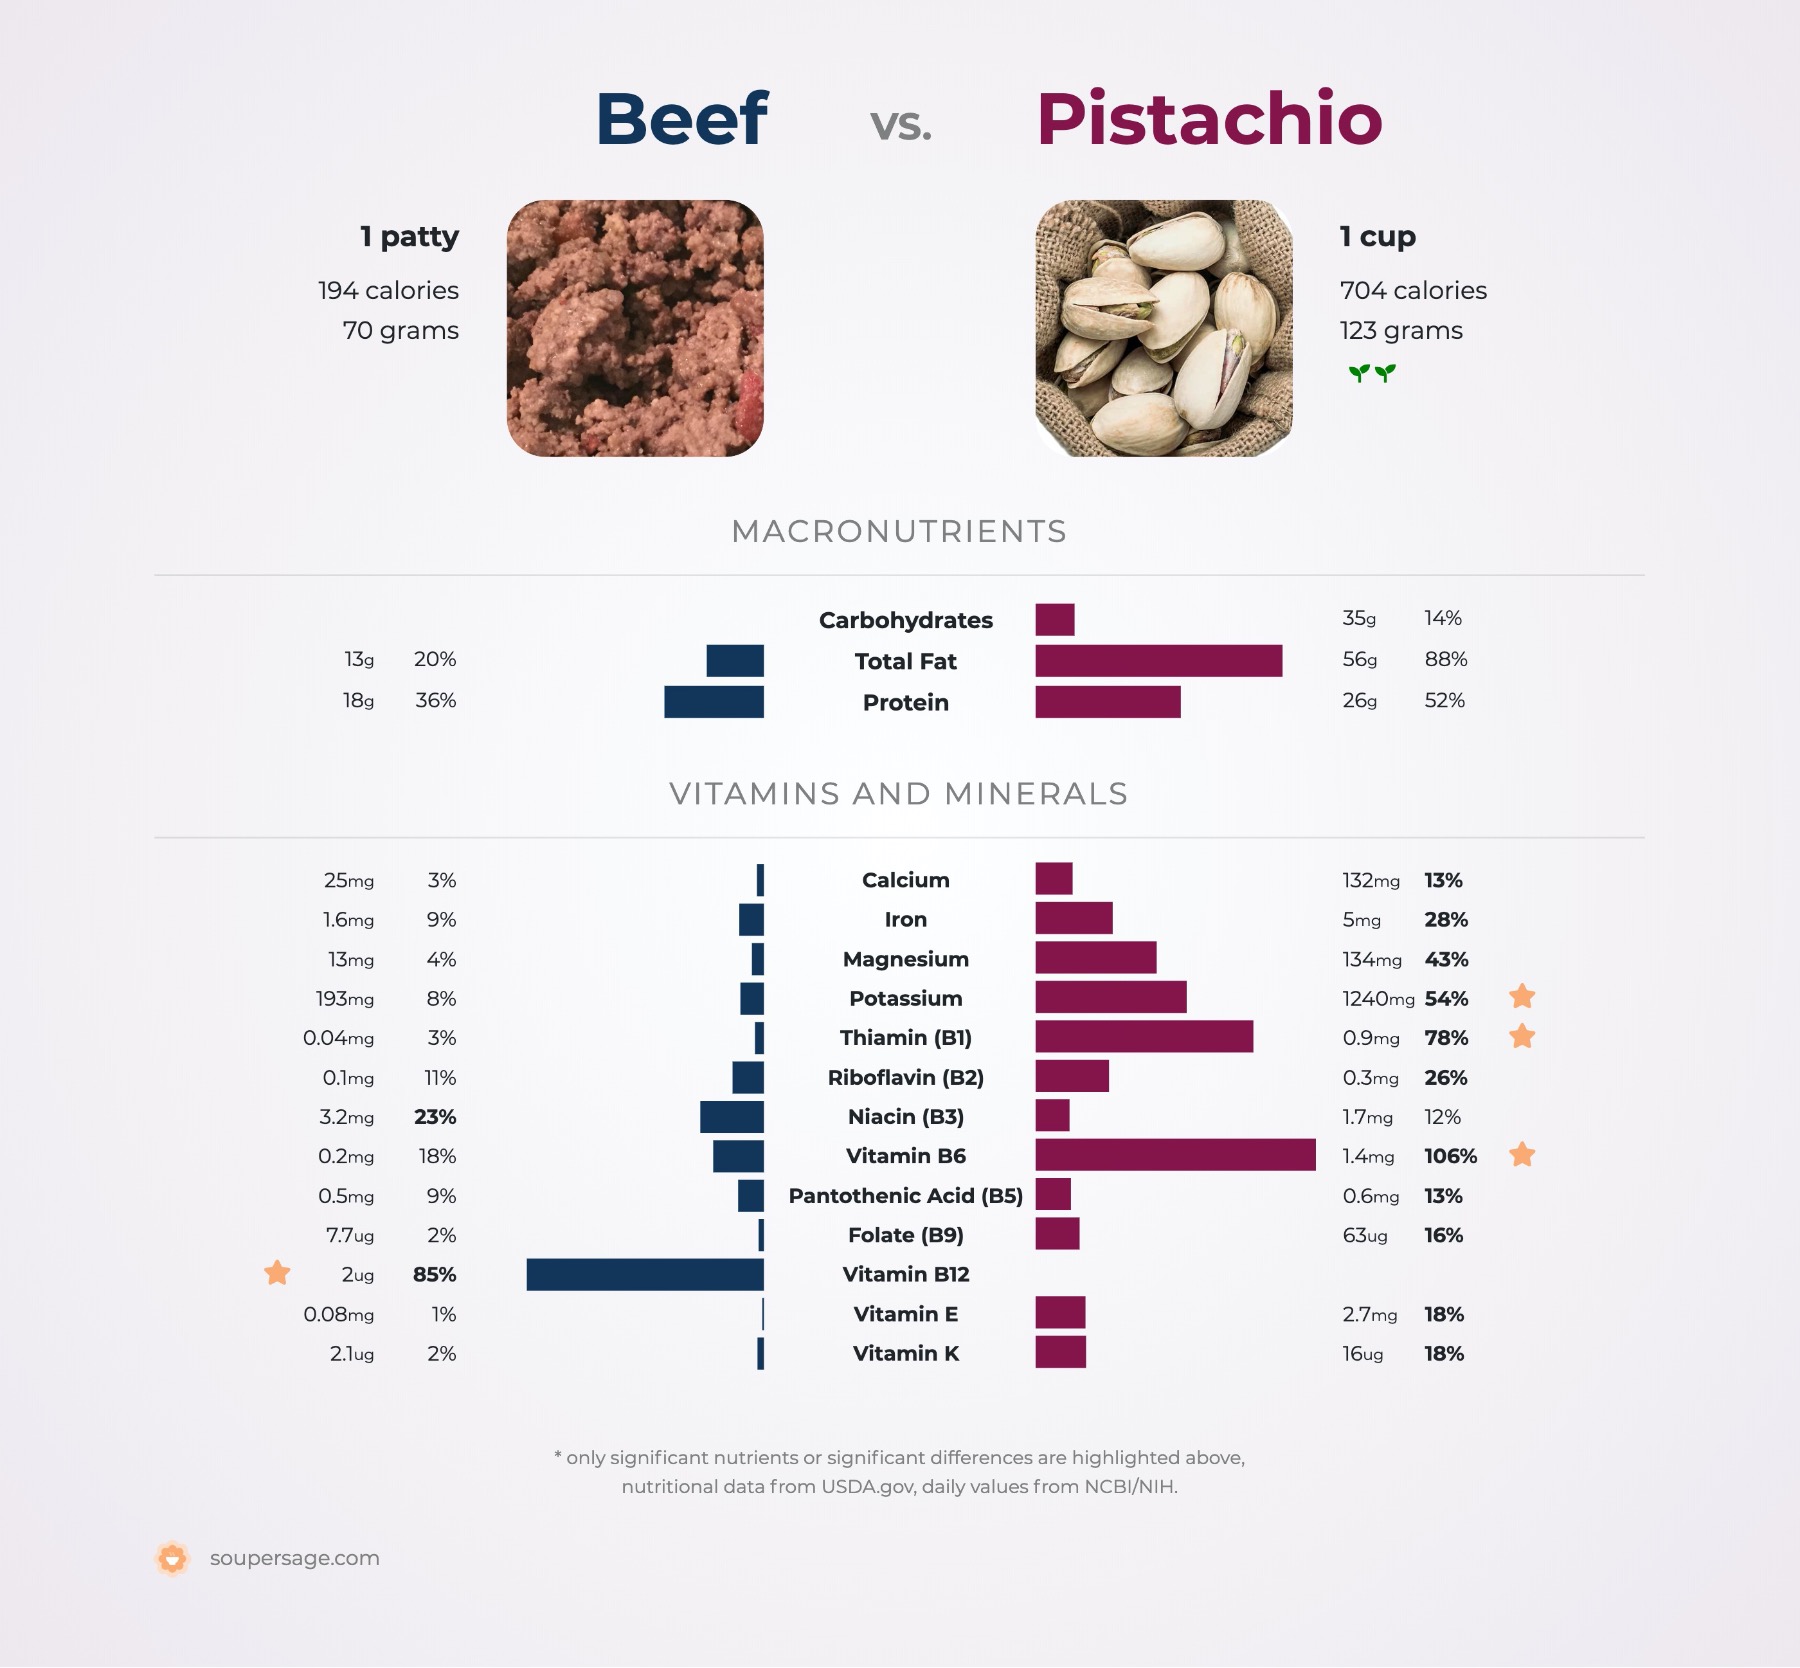 nutrition comparison of beef vs. pistachio